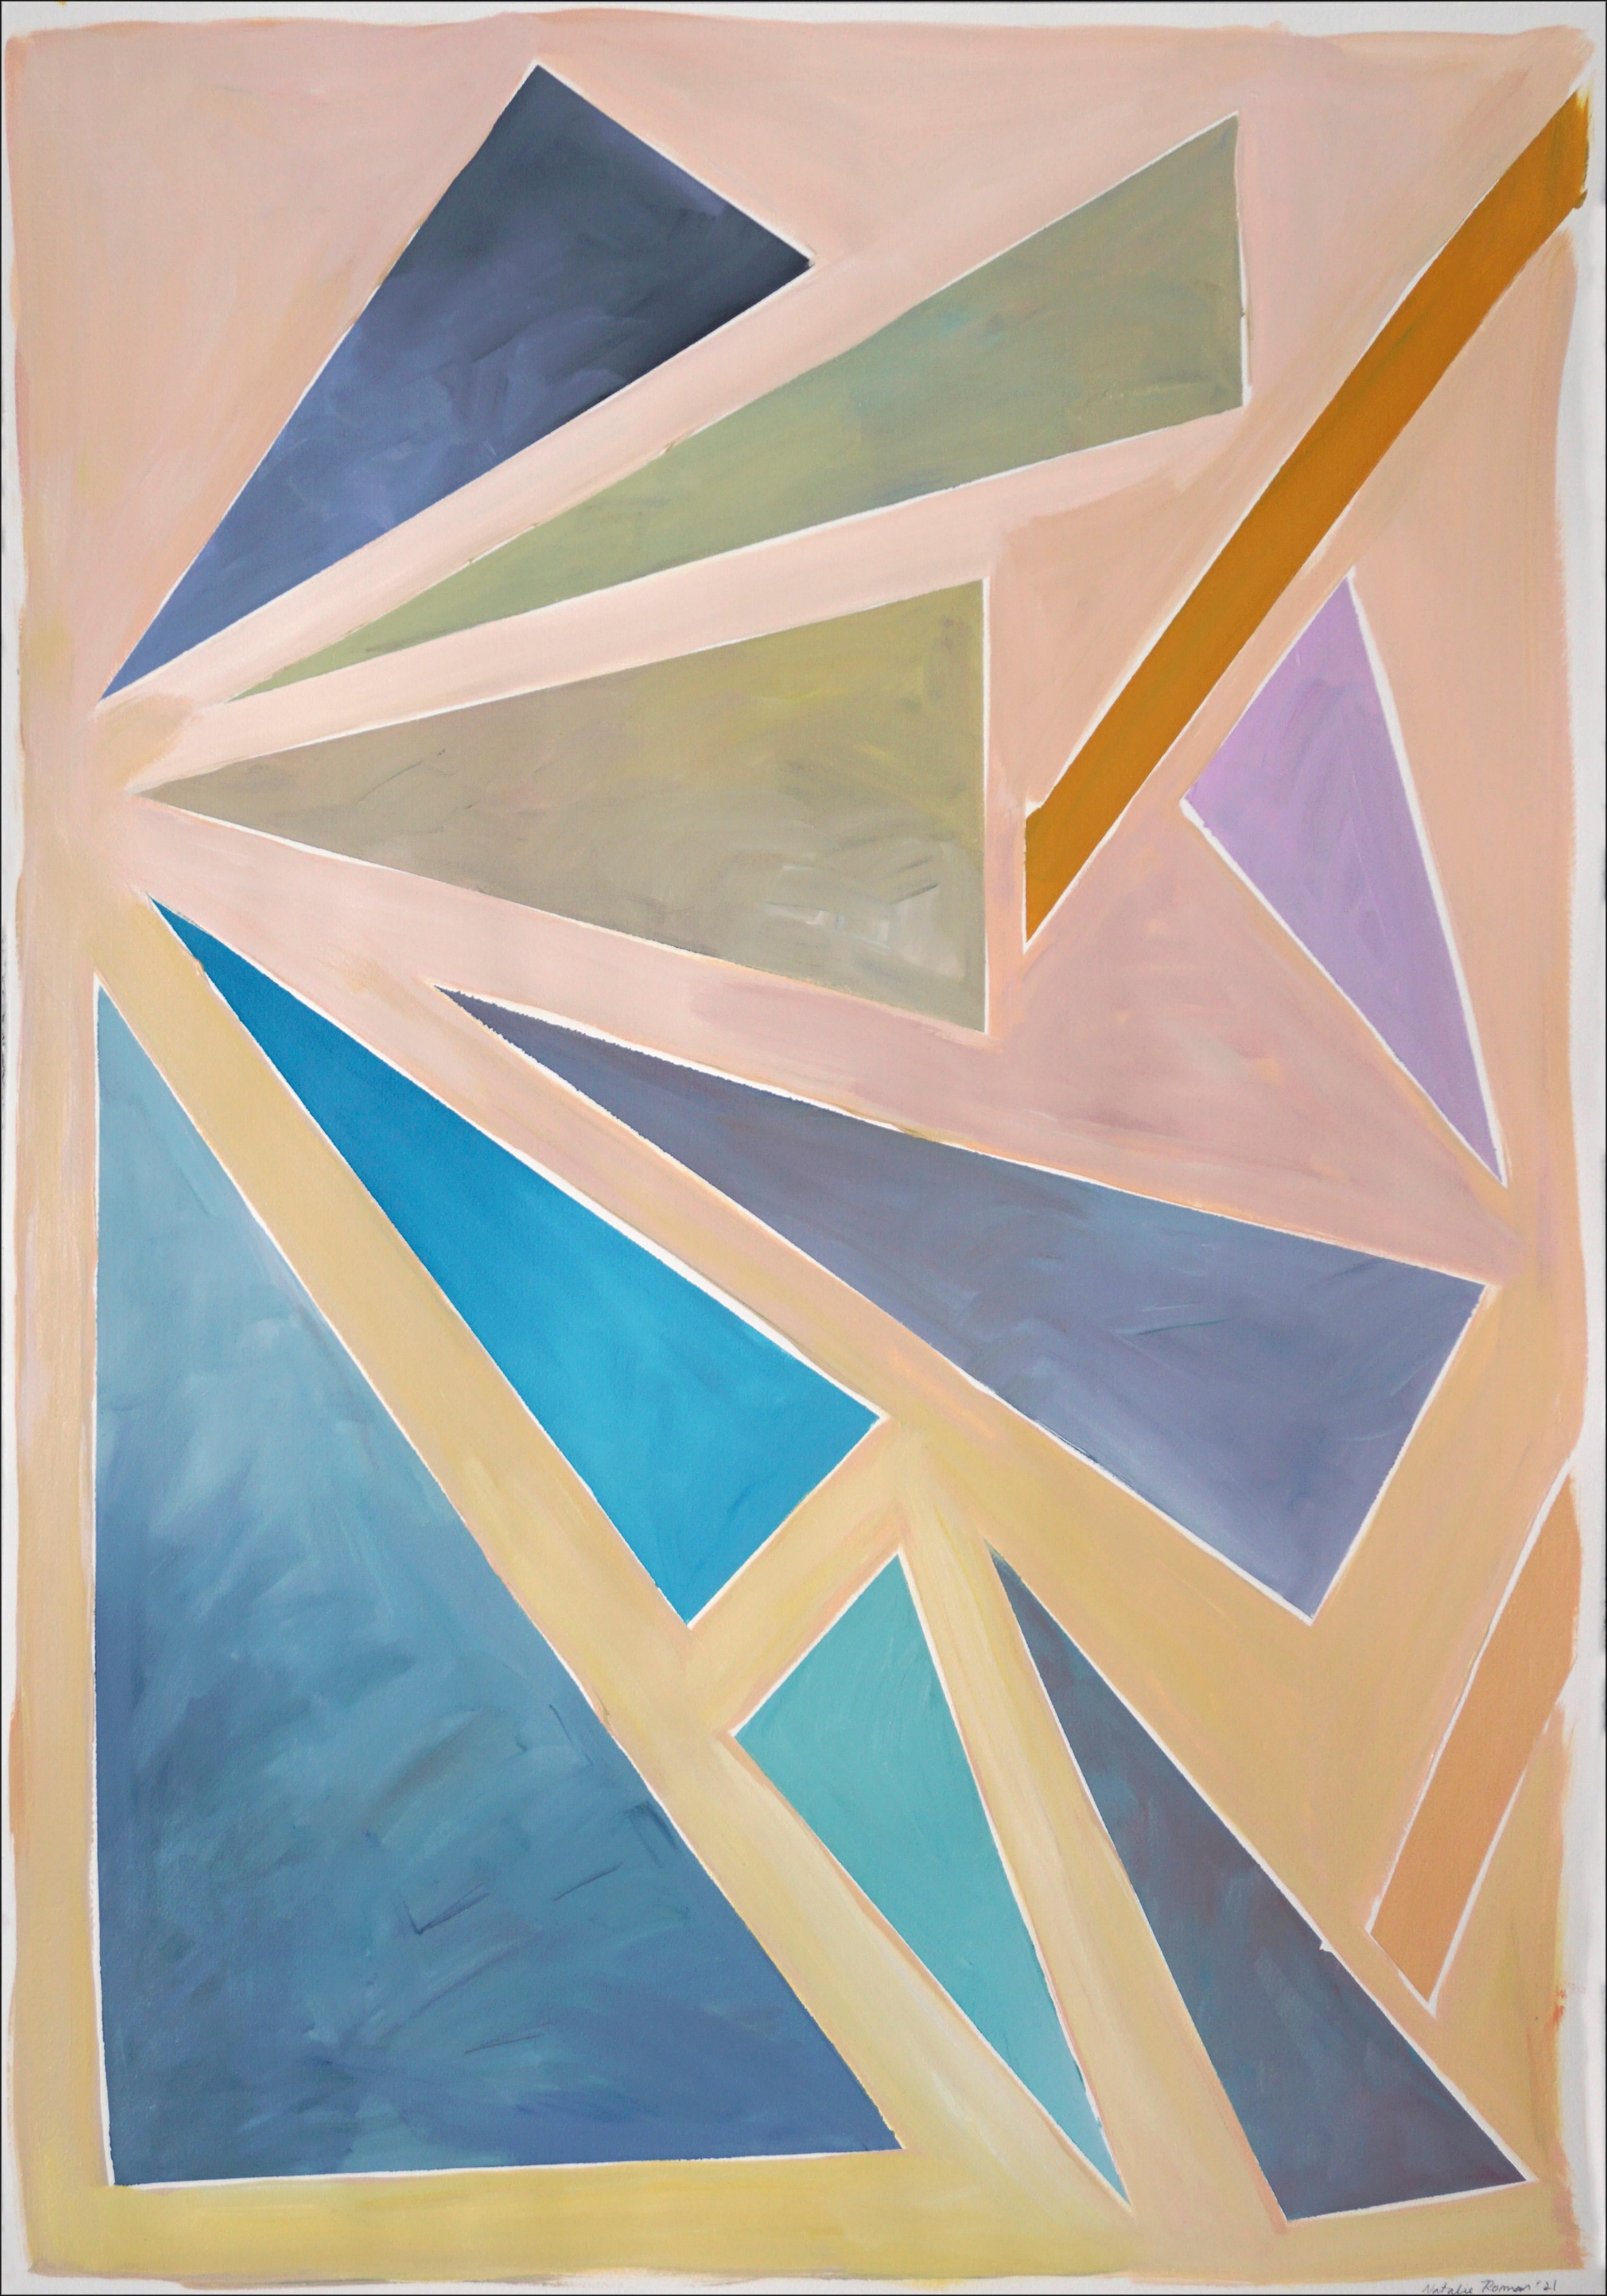 Abstract Painting Natalia Roman - Triangles de coucher de soleil constructivistes, fond aux tons pastel, géométrie flottante